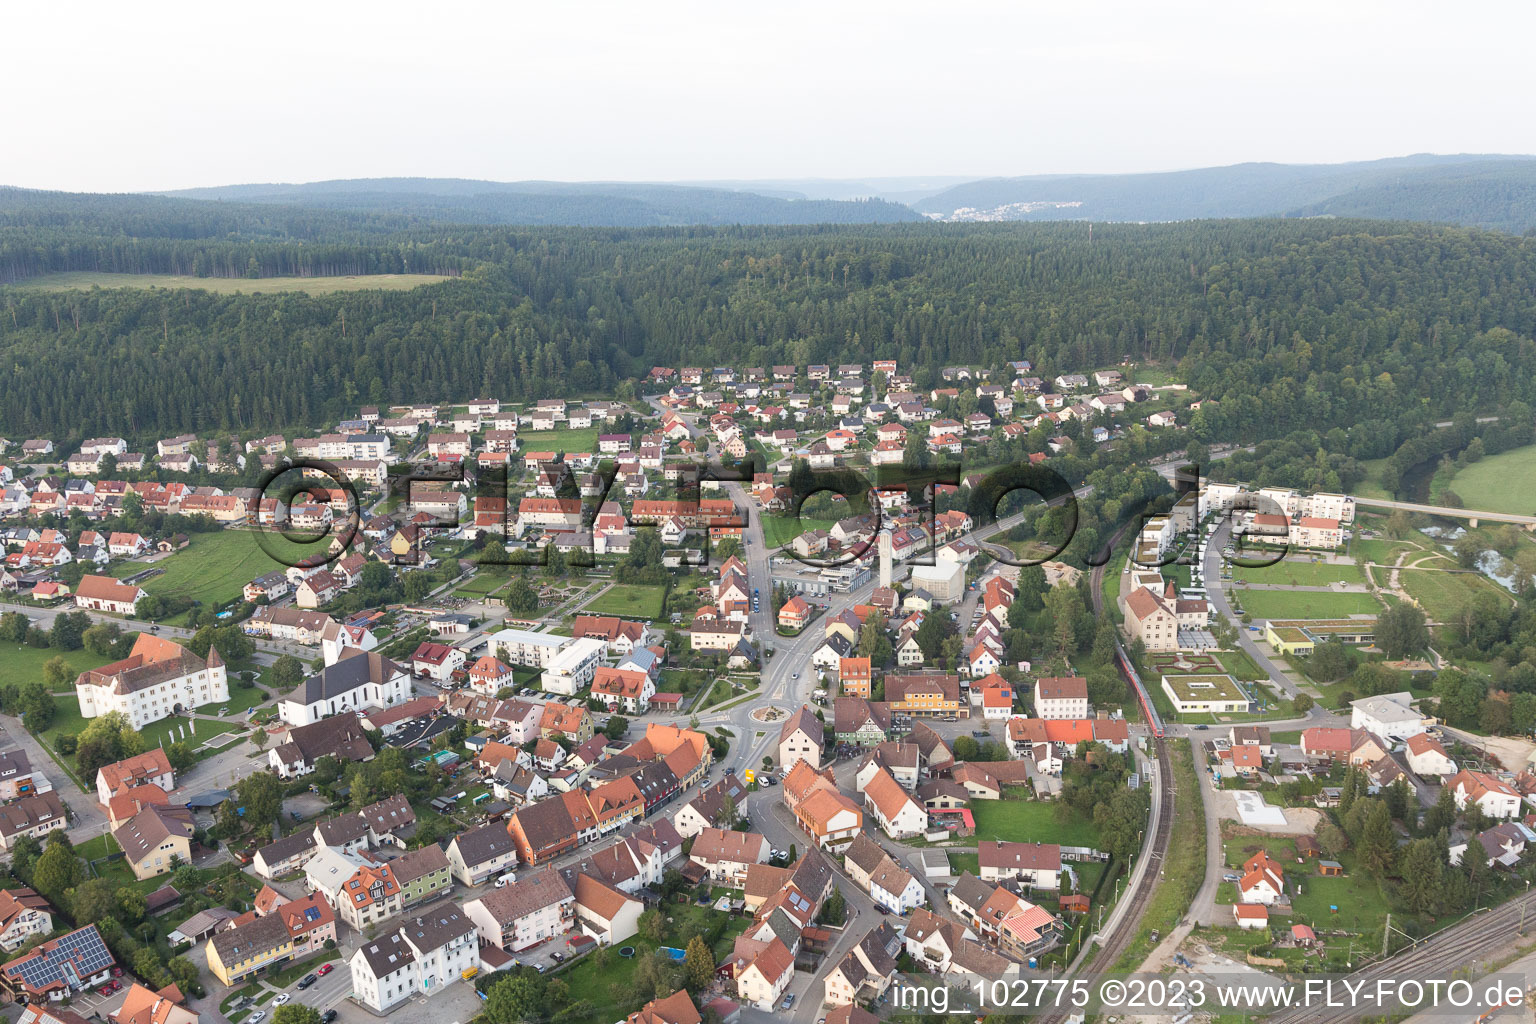 Luftbild von Immendingen im Bundesland Baden-Württemberg, Deutschland